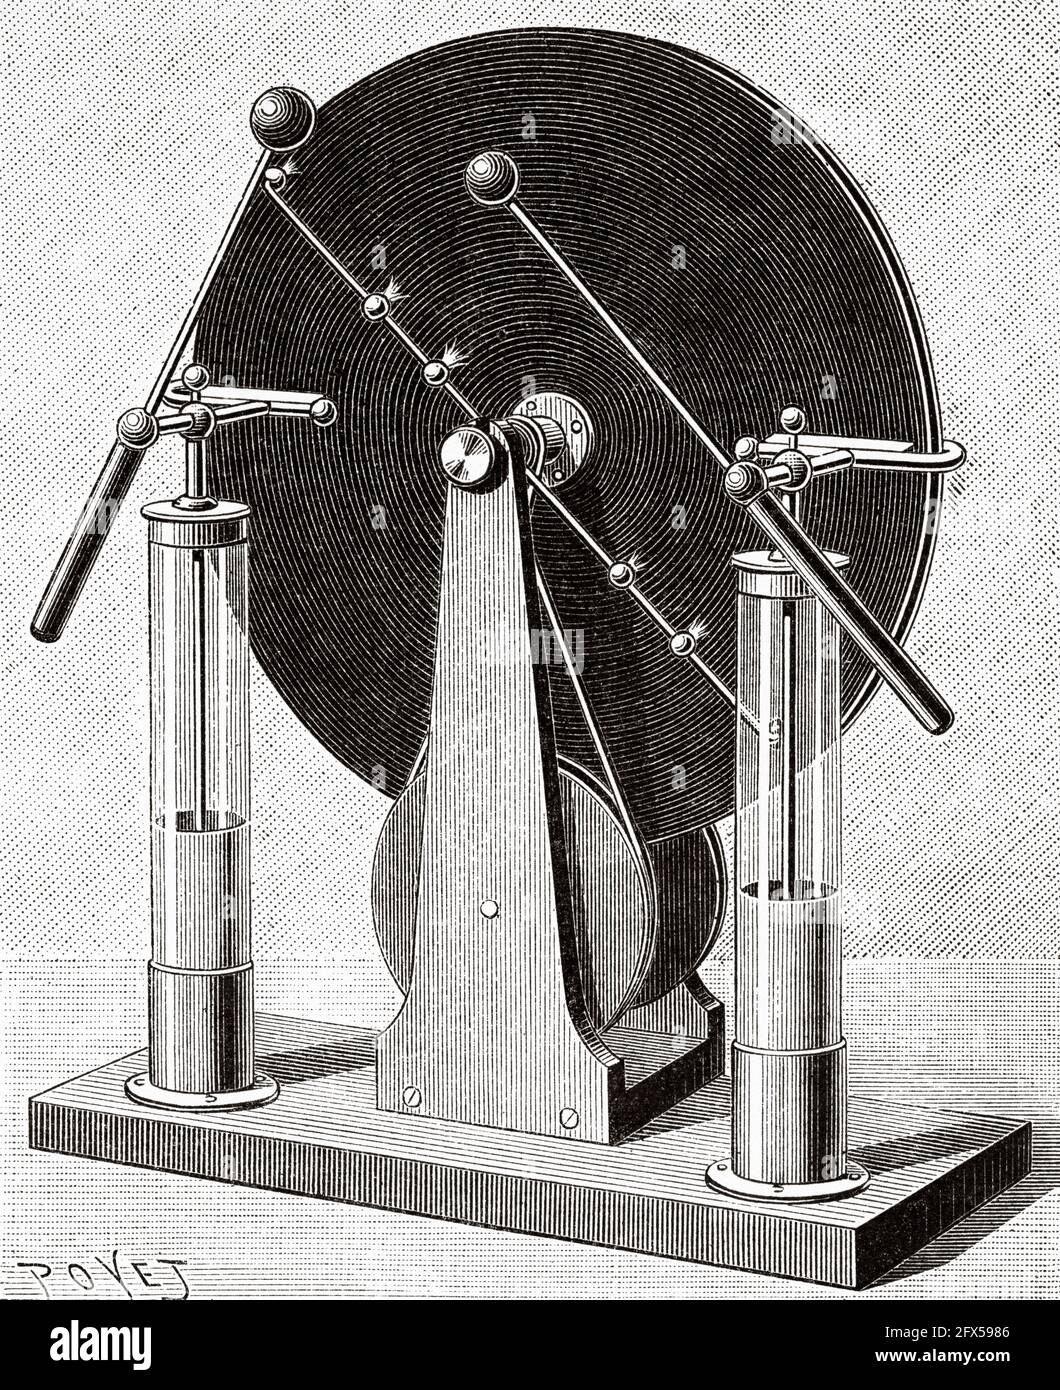 Die Wimshurst-Einflussmaschine ist ein elektrostatischer Generator, eine Maschine zur Erzeugung von Hochspannungen, die zwischen 1880 und 1883 vom britischen Erfinder James Wimshurst (1832–1903) entwickelt wurde. Es hat ein unverwechselbares Aussehen mit zwei großen, kontra-rotierenden Scheiben, die in einer vertikalen Ebene montiert sind, zwei gekreuzten Stäben mit Metallbürsten und einem Funkenspalt, der aus zwei Metallkugeln besteht. Alte, gravierte Illustration aus dem 19. Jahrhundert von La Nature 1893 Stockfoto